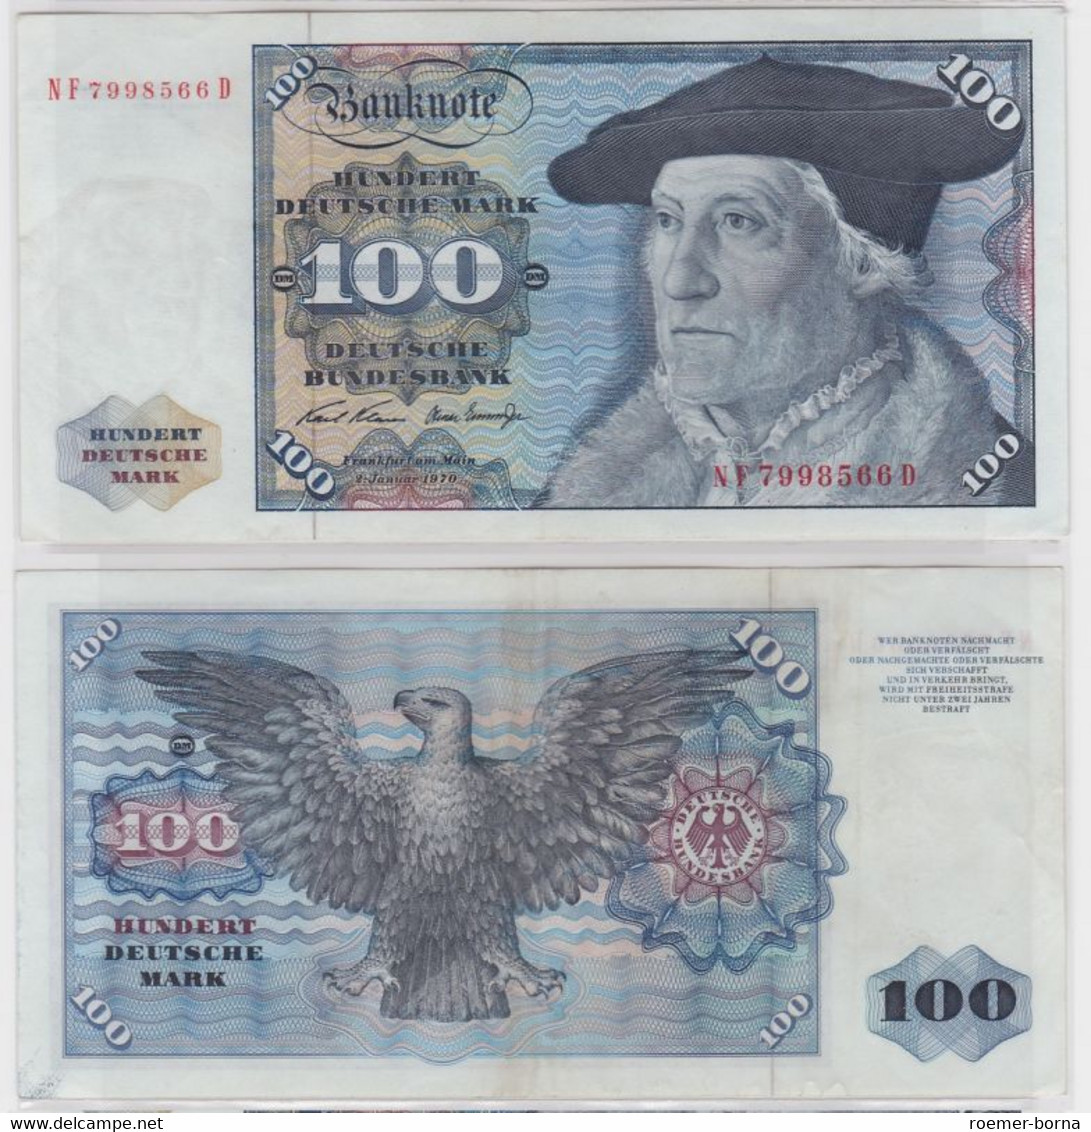 T146514 Banknote 100 DM Deutsche Mark Ro. 273b Schein 2.Jan 1970 KN NF 7998566 D - 100 Deutsche Mark